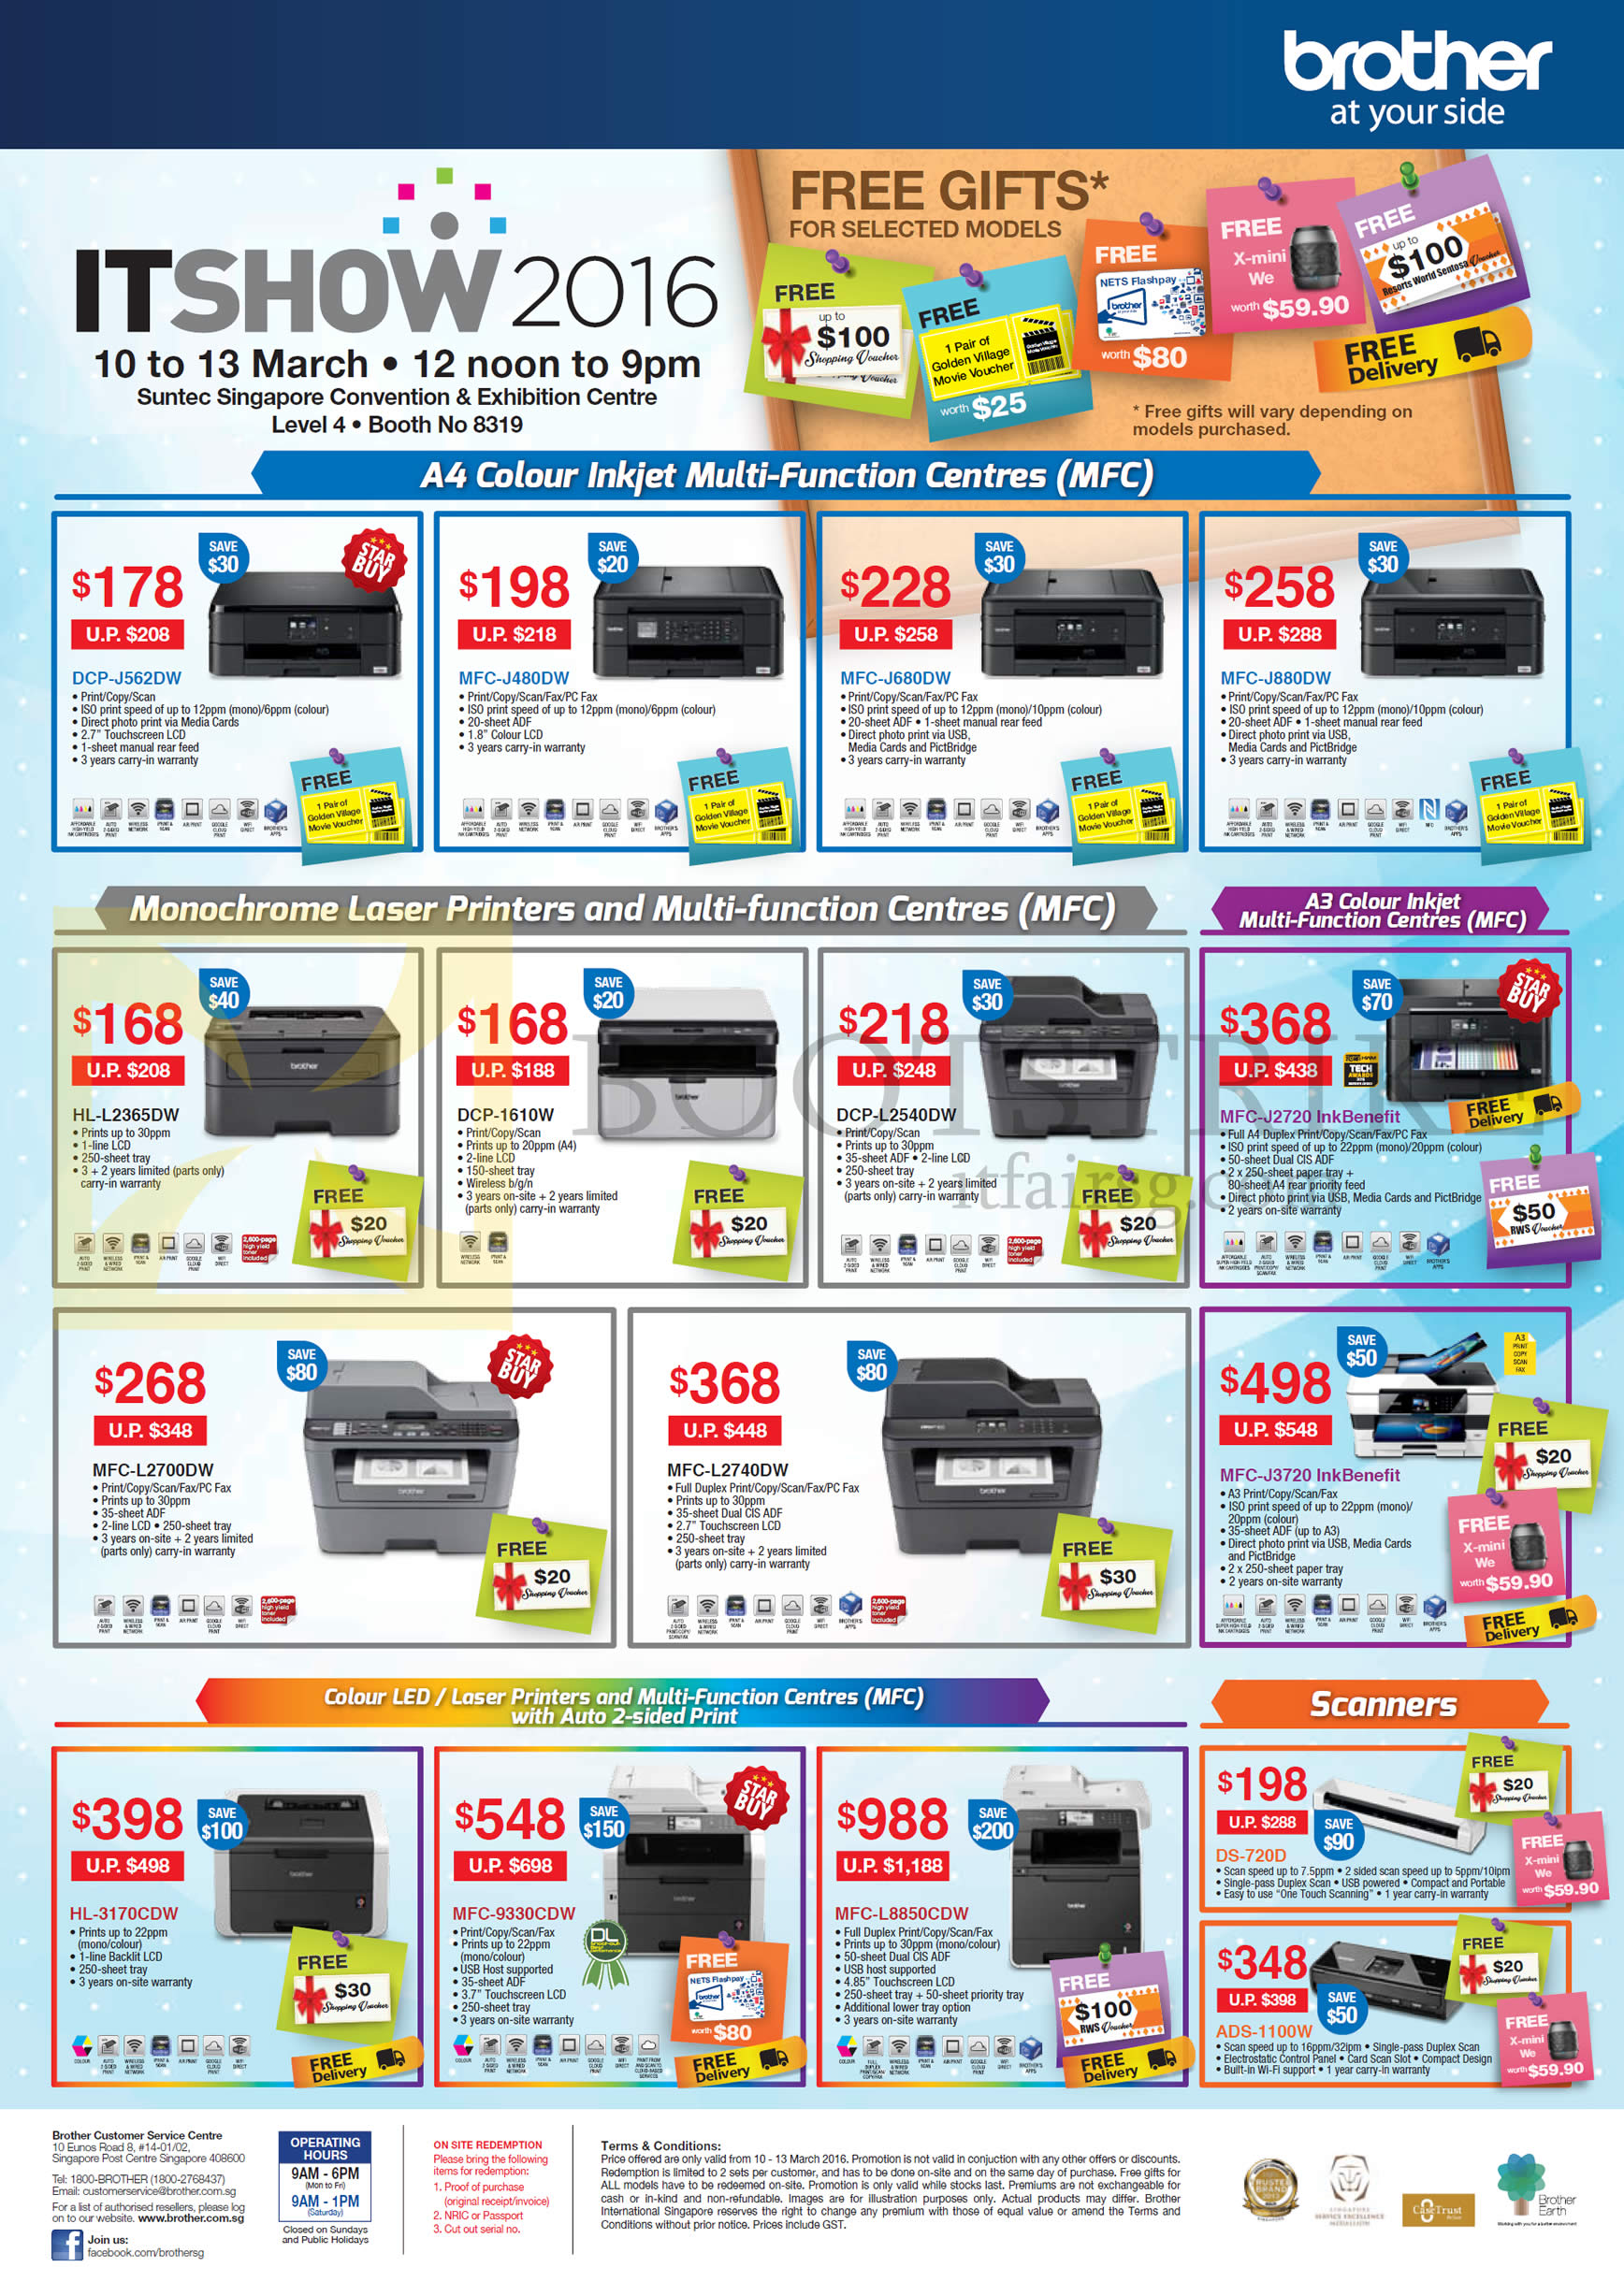 IT SHOW 2016 price list image brochure of Brother Printers, Scanners, DCP-J562DW, 1610W, L2540DW, MFC-J480DW, J680DW, J880DW, J2720, L2700DW, L2740DW, J3720 InkBenefit, 9330CDW, HL-L2365DW